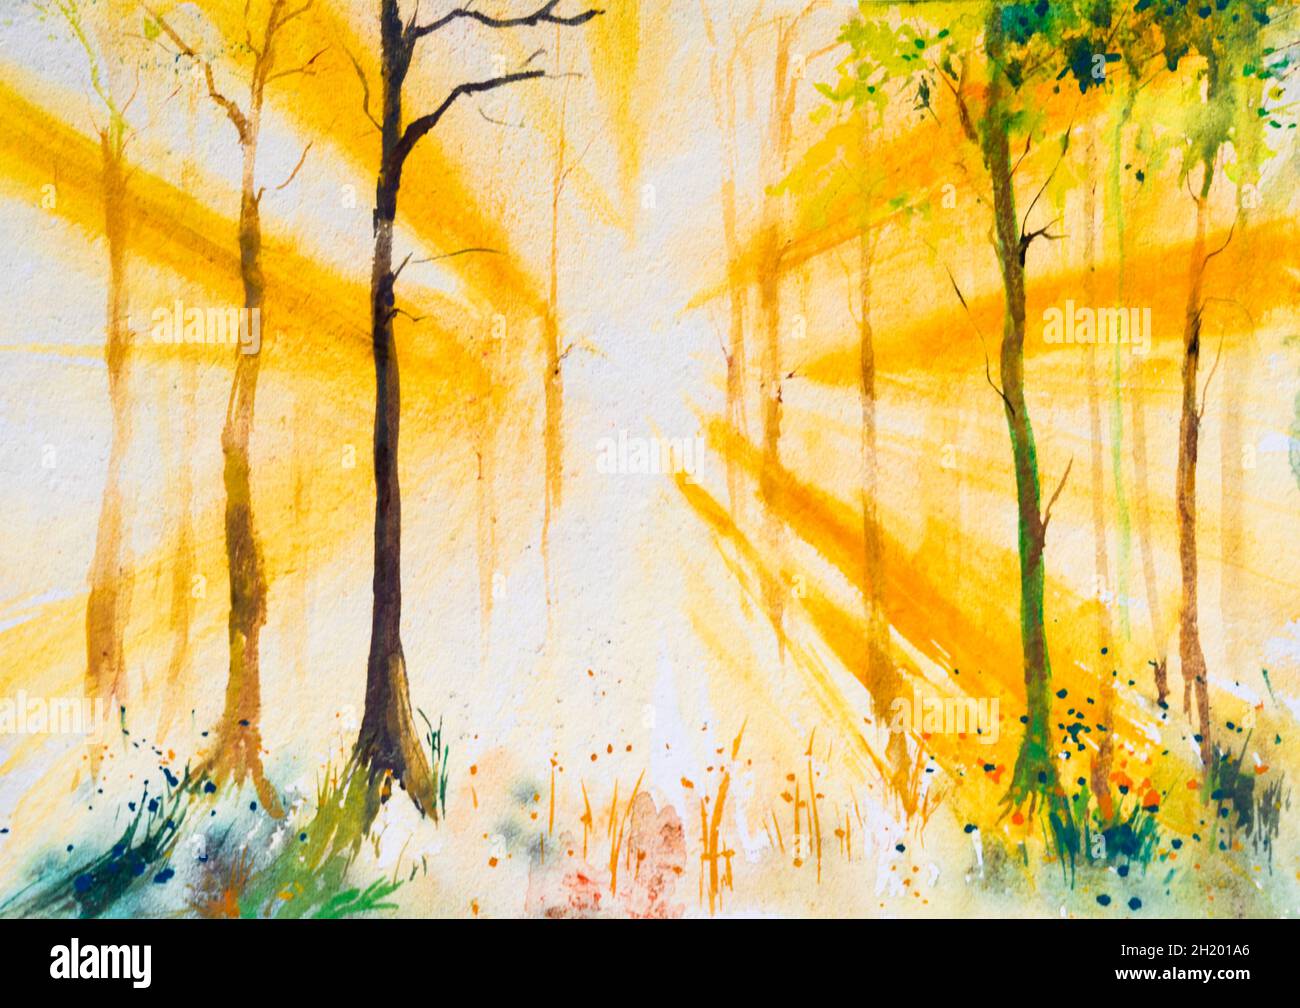 Belle peinture aquarelle d'une forêt lumineuse avec des poutres apparentes  à travers les arbres.Aquarelle peinte à la main Illustration de l'espoir  Photo Stock - Alamy